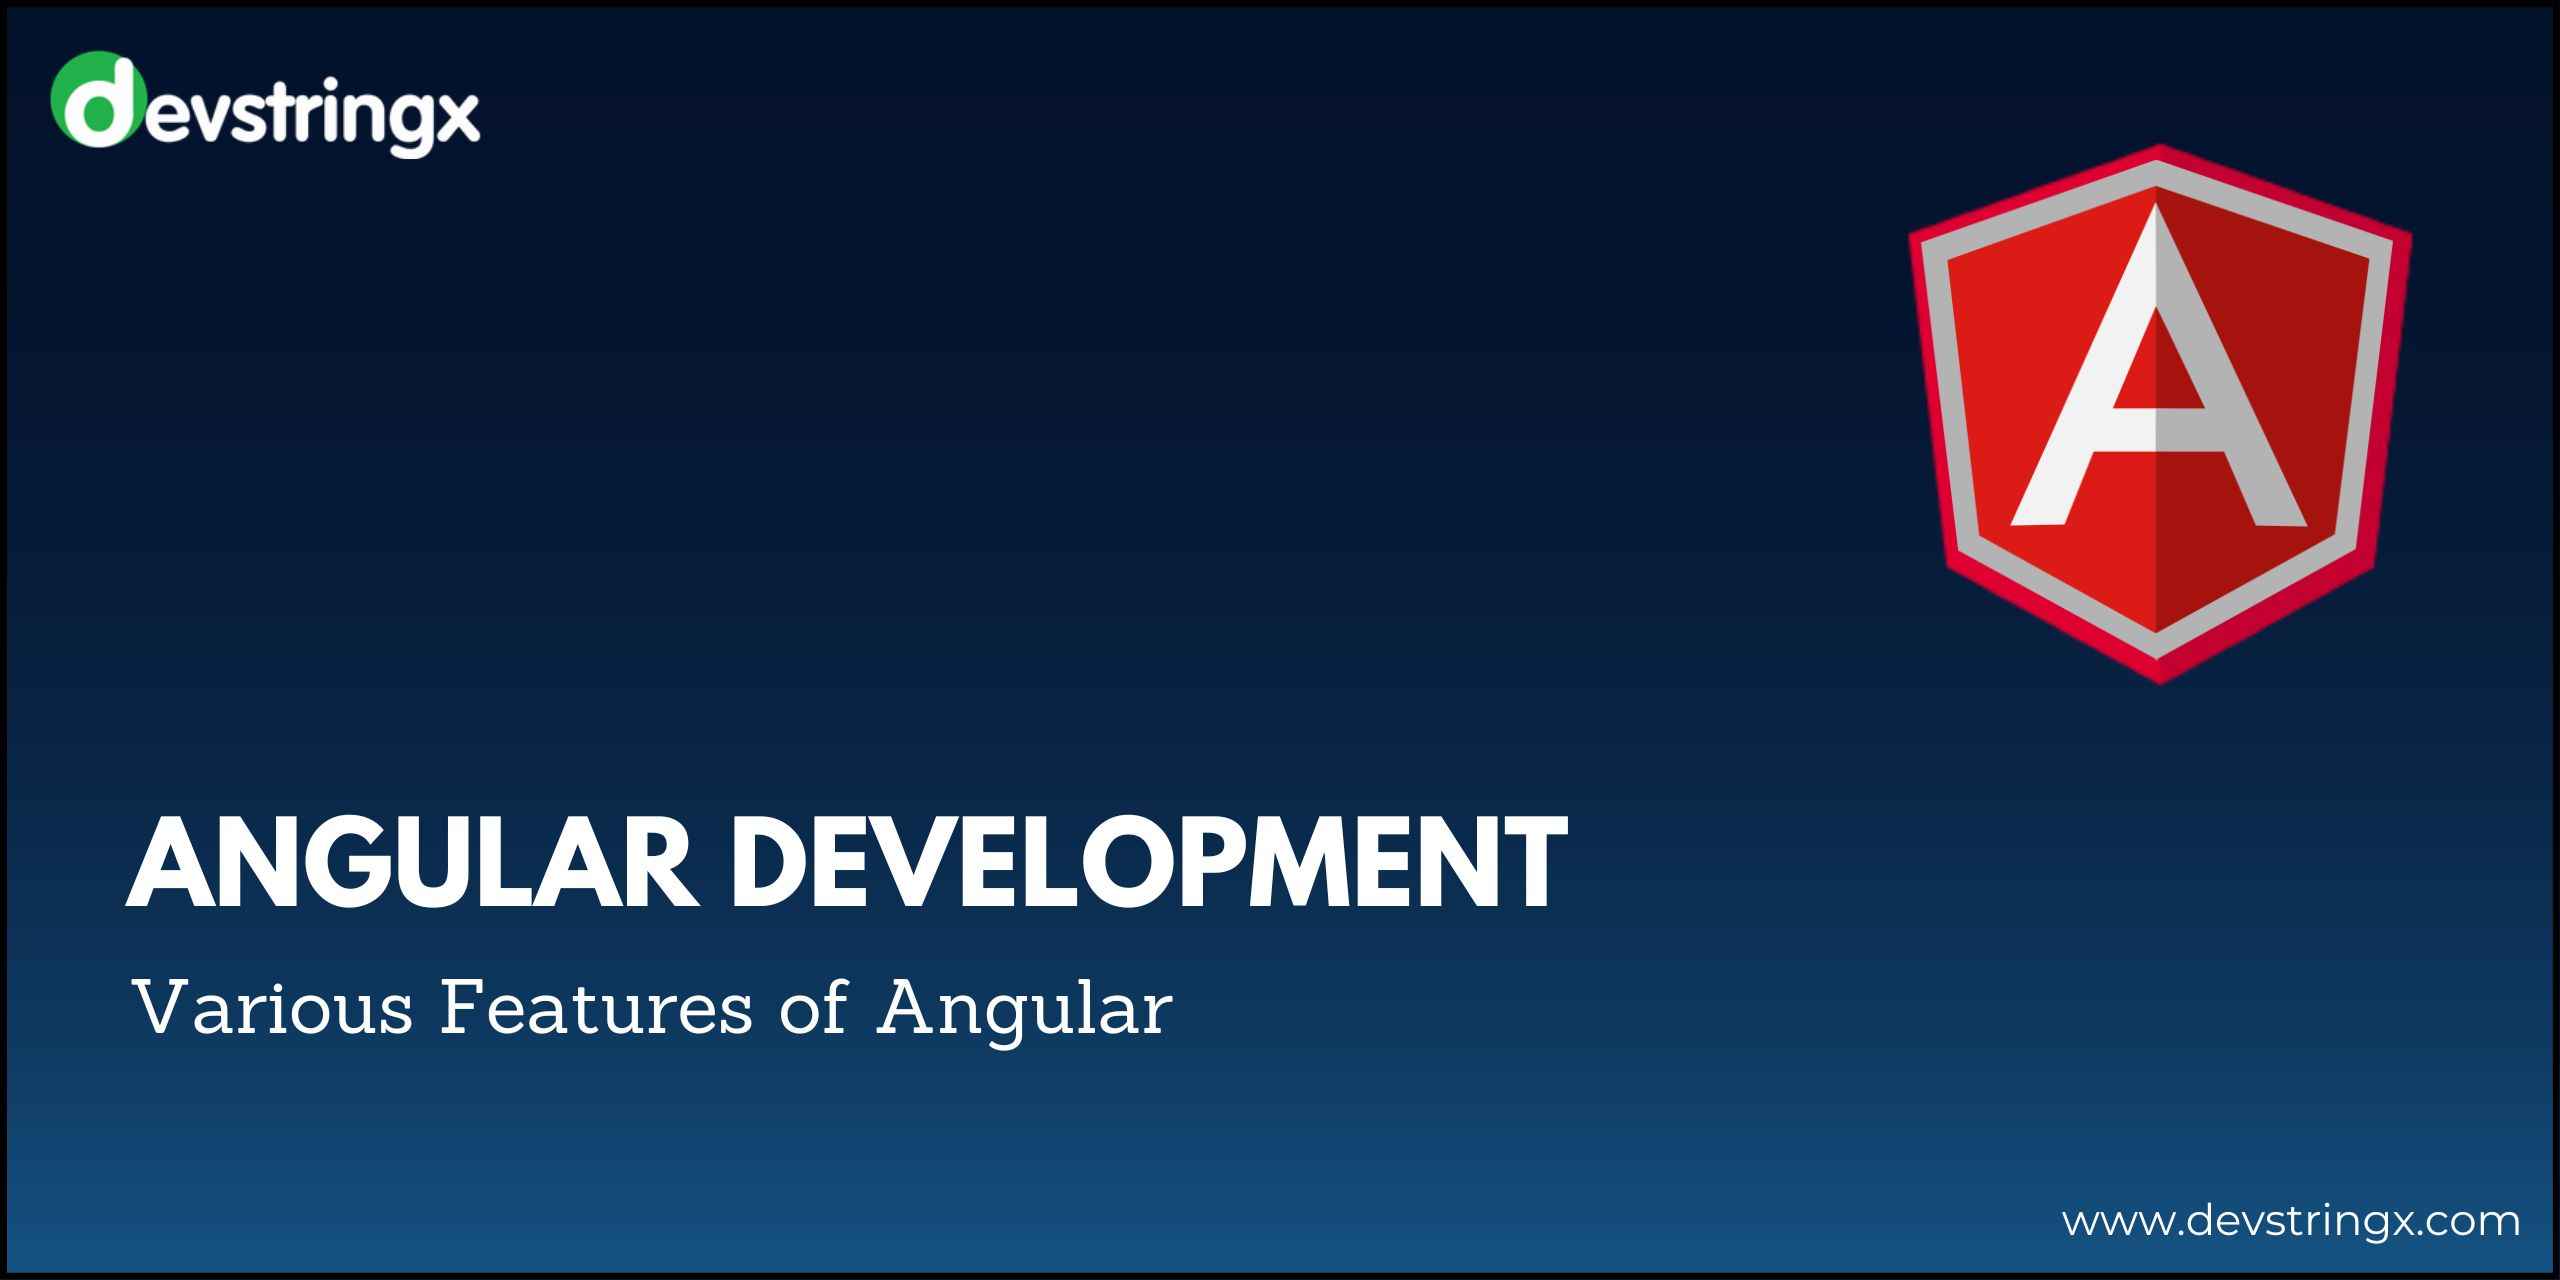 Banner image for Angular Development blog